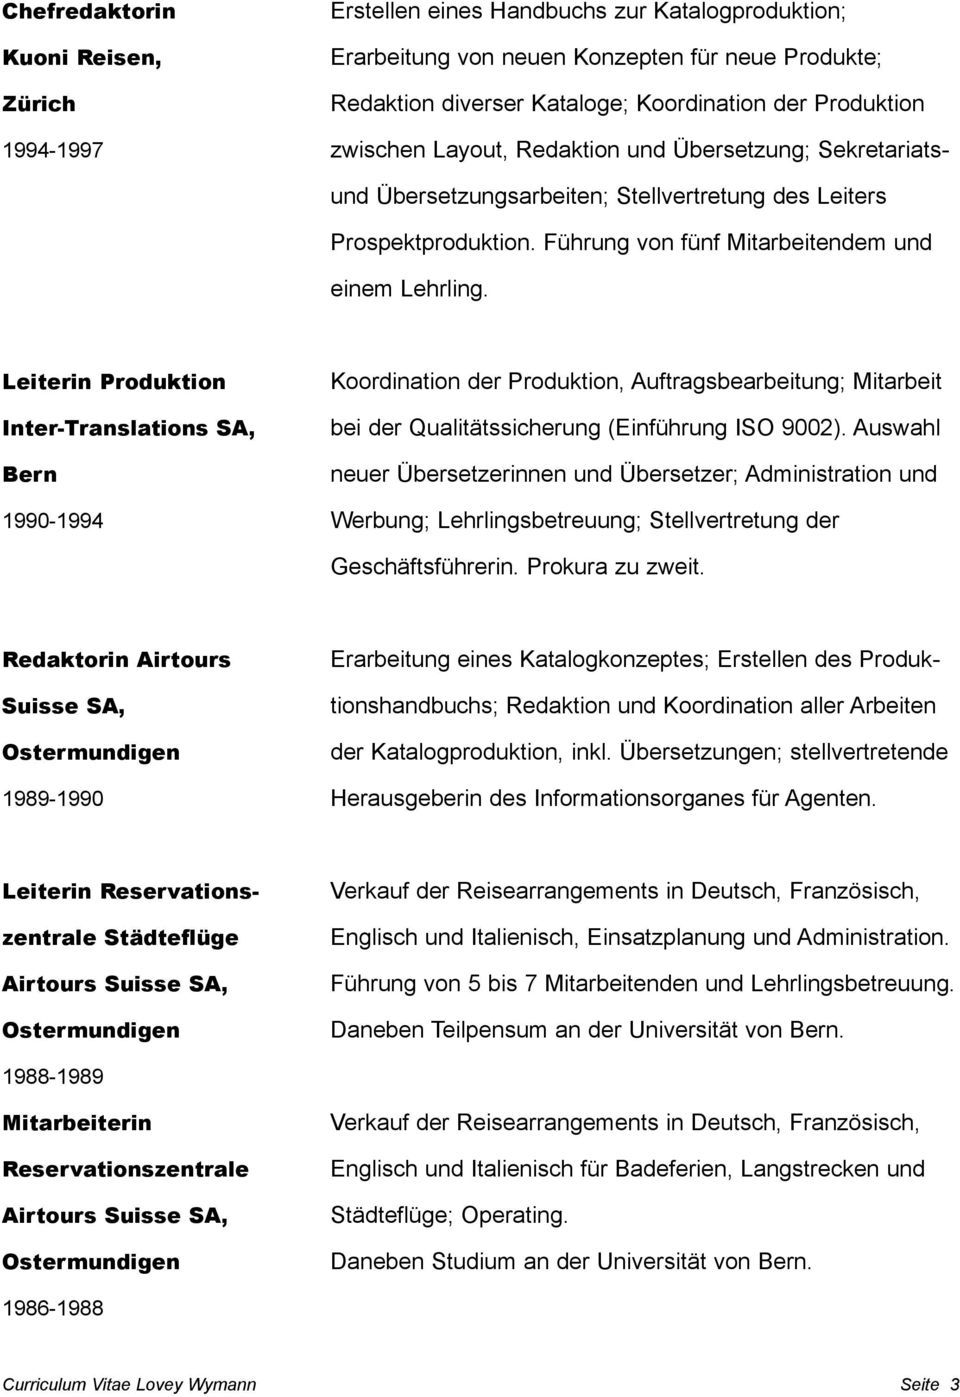 Leiterin Produktion Inter-Translations SA, Bern 1990-1994 Koordination der Produktion, Auftragsbearbeitung; Mitarbeit bei der Qualitätssicherung (Einführung ISO 9002).